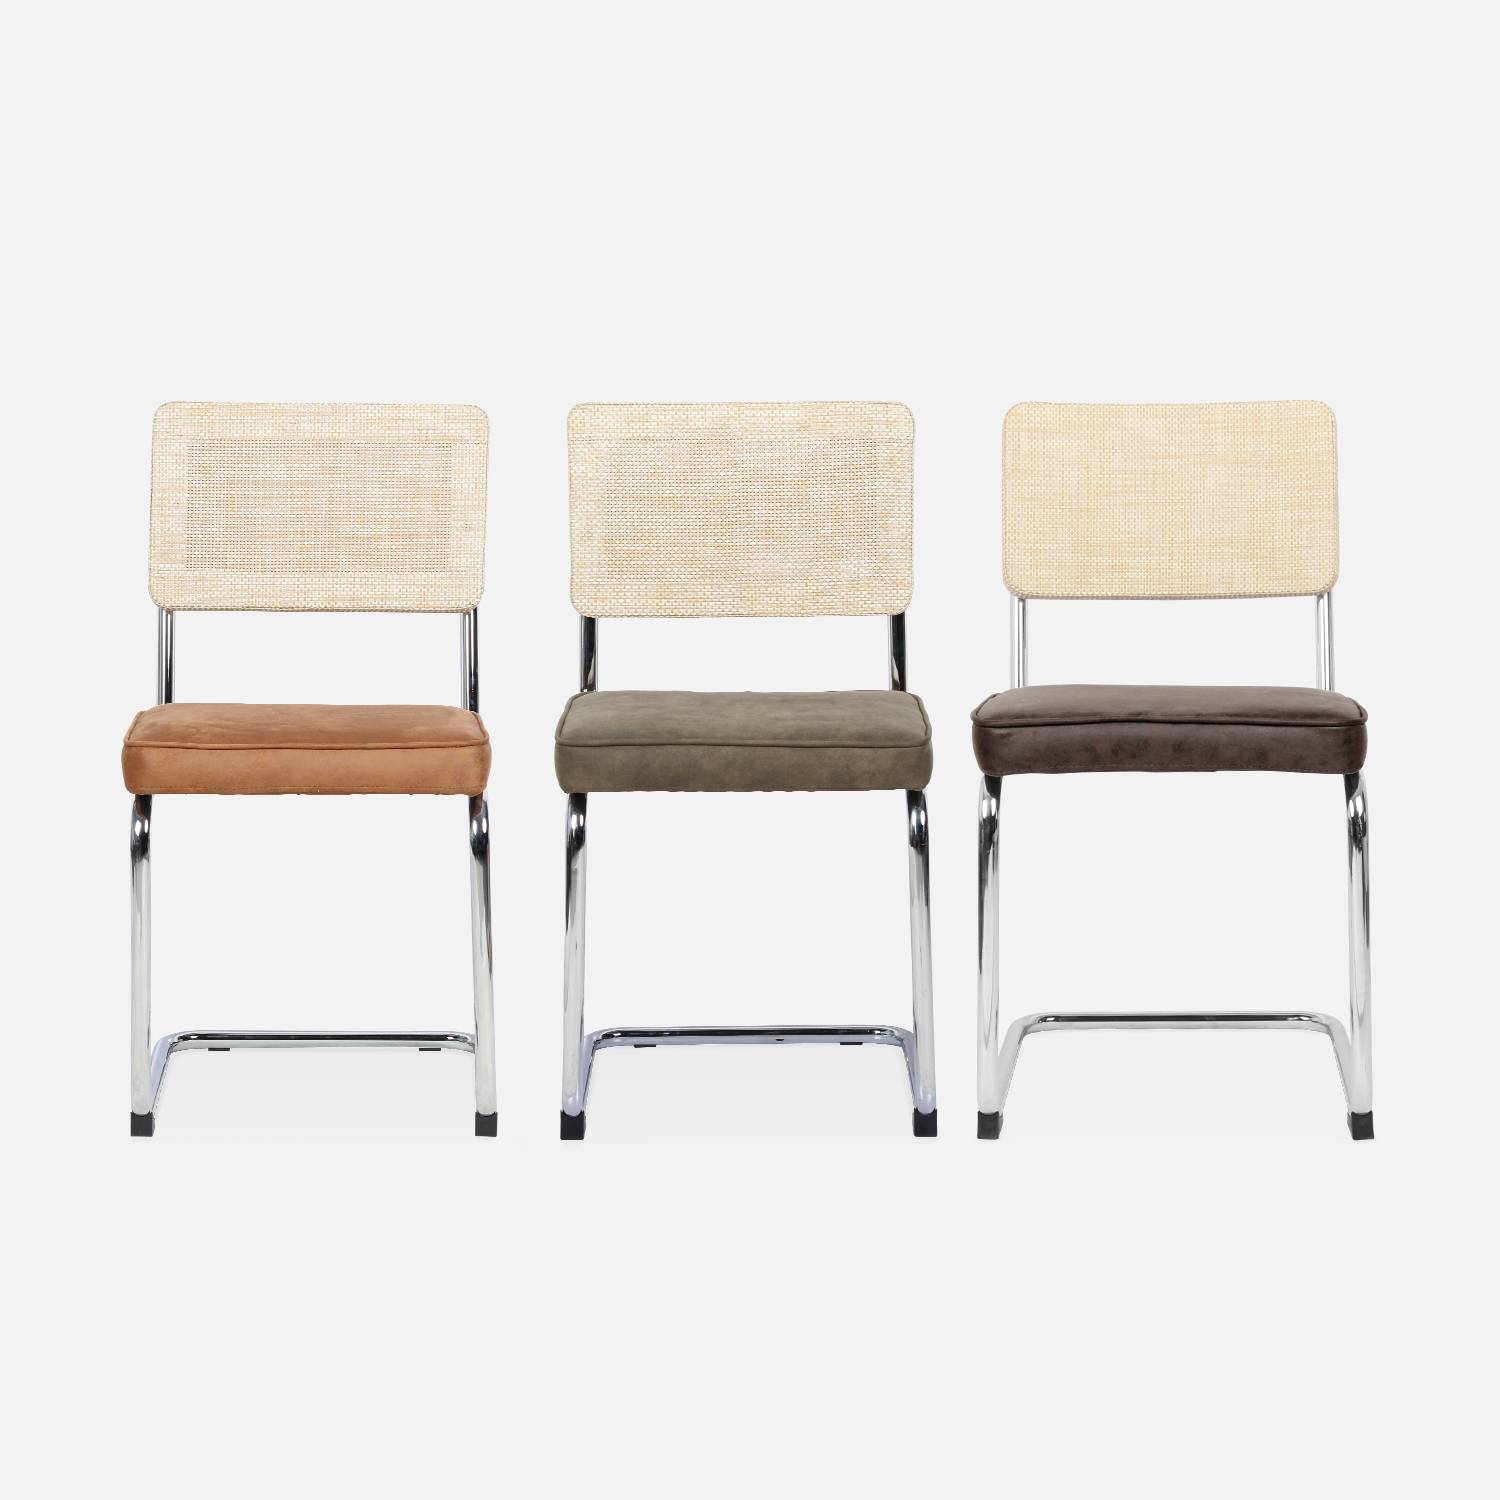 2 cadeiras cantilever - Maja - tecido castanho claro e resina com efeito de rotim, 46 x 54,5 x 84,5 cm Photo7